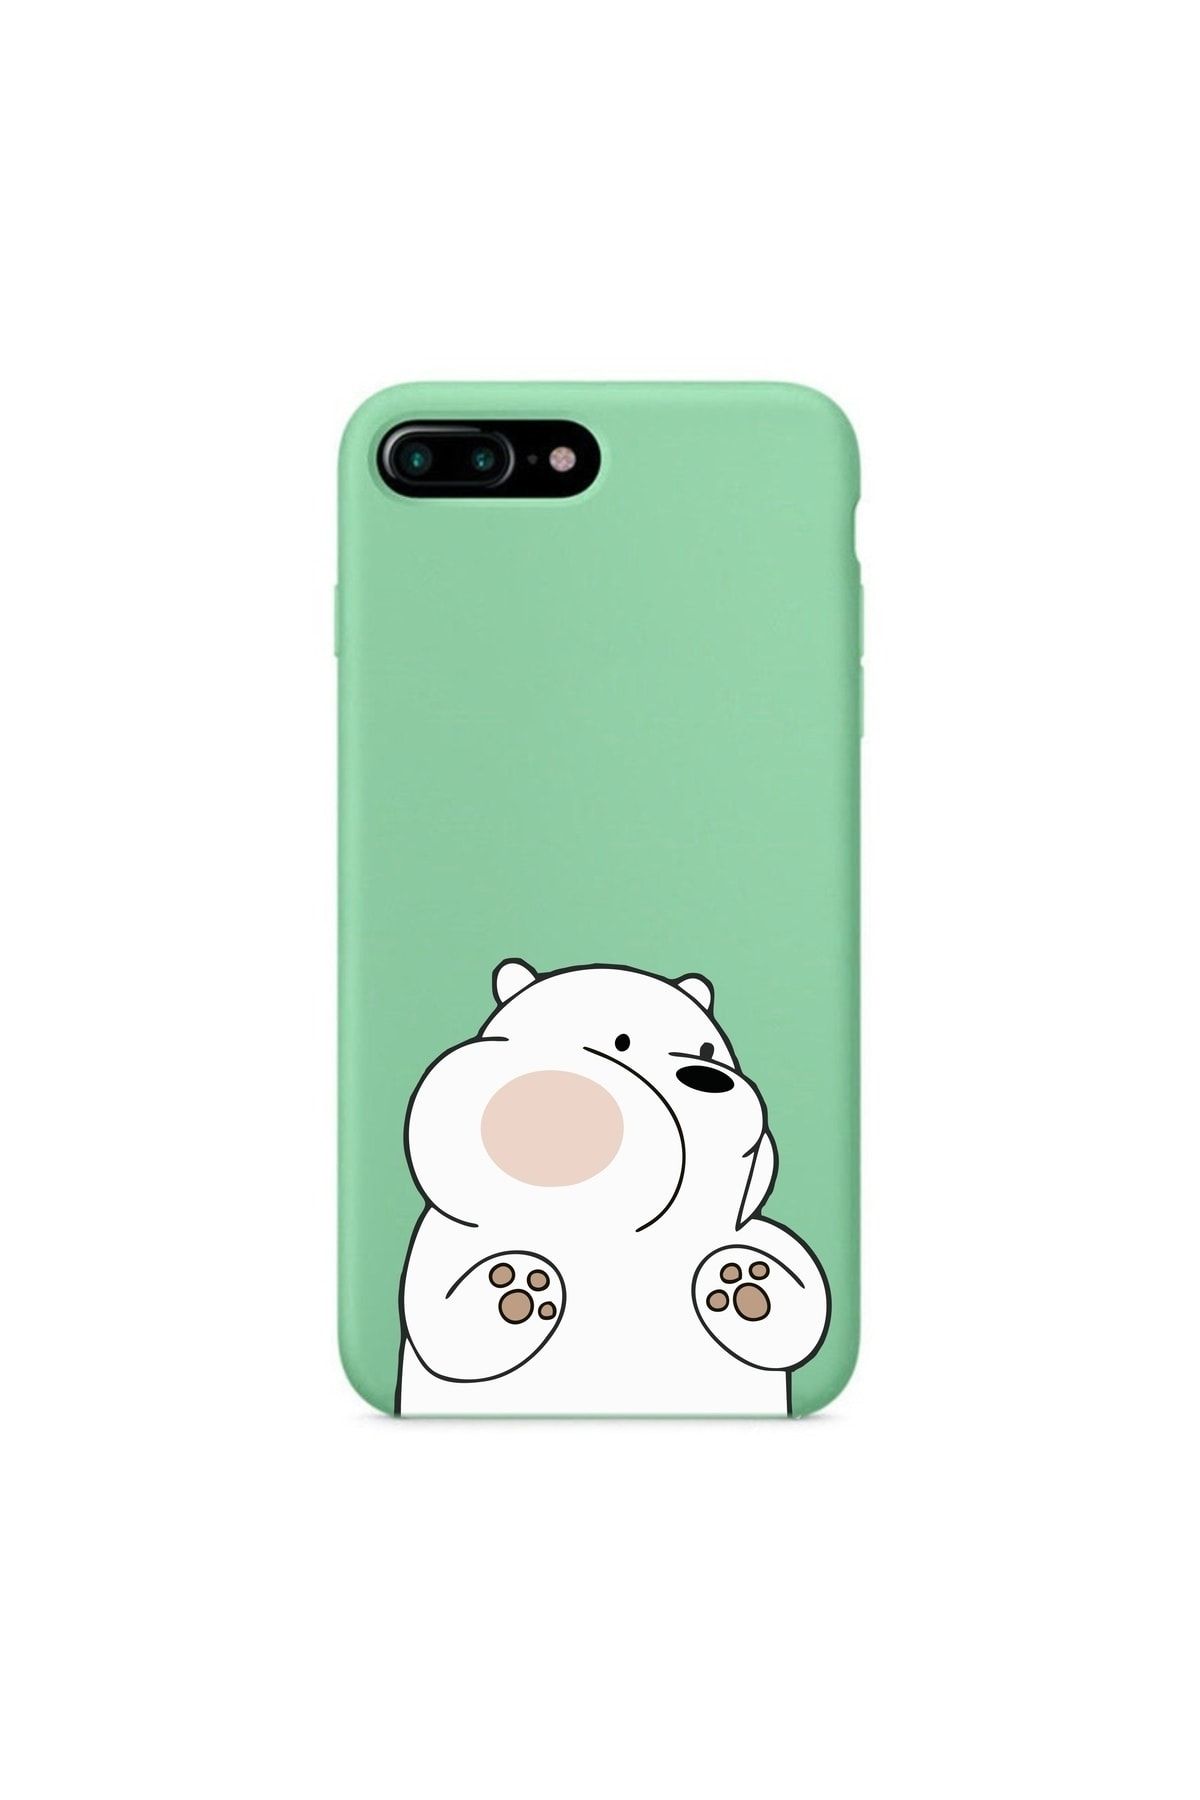 mooodcase Iphone 7 Plus Premium Lansman Pastel Mint Yeşil Telefon Kılıfı Kırmızı Yanaklı Ayıcık Desenli